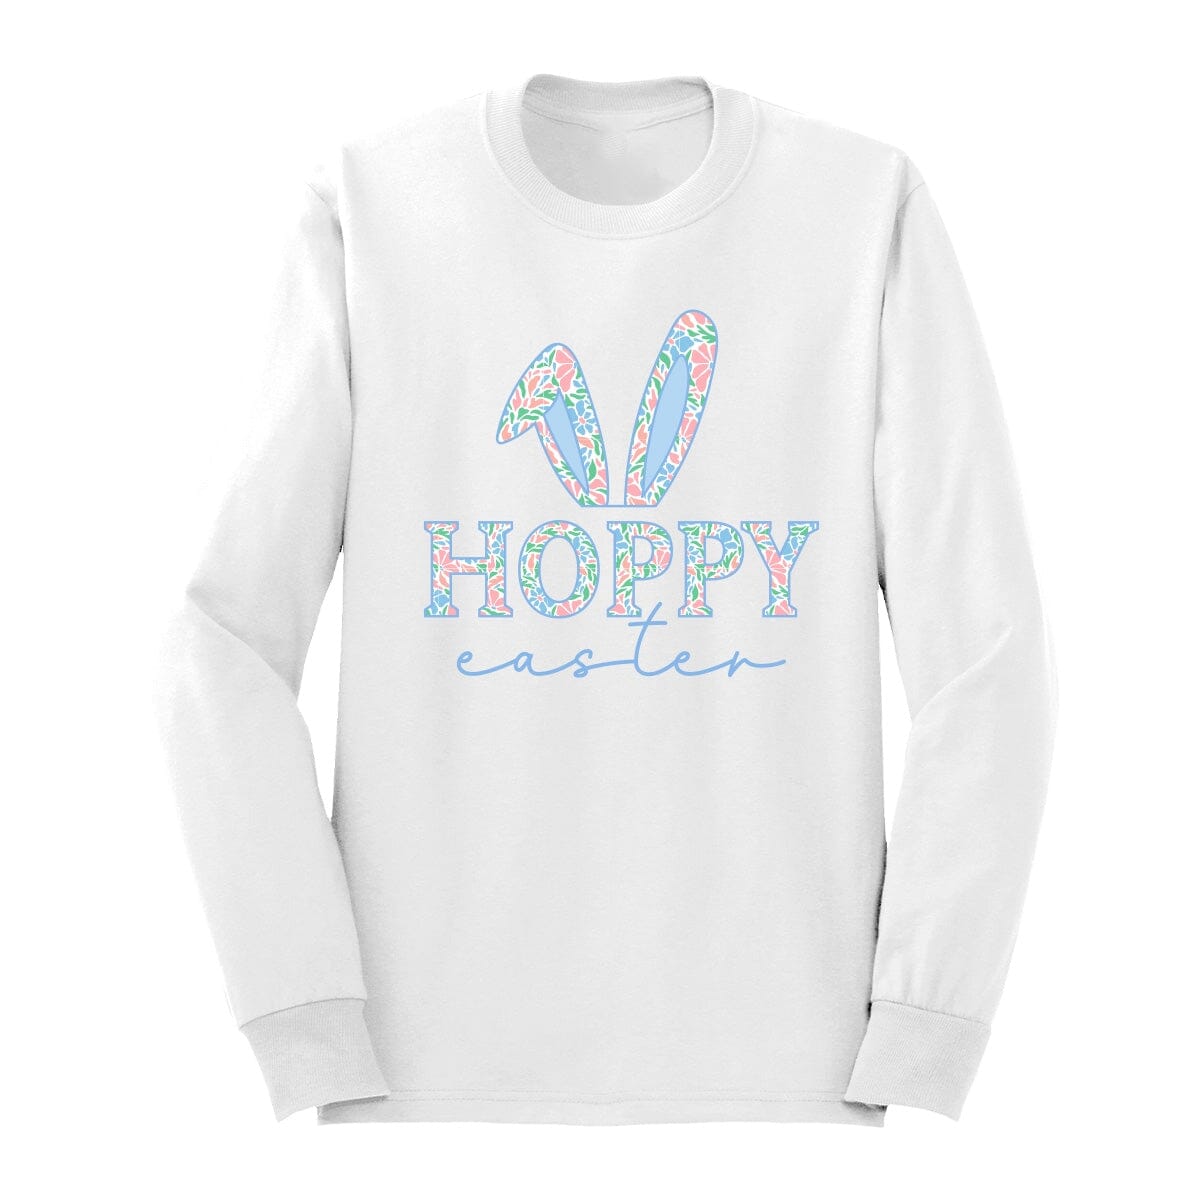 Hoppy Easter Long Sleeve Shirt